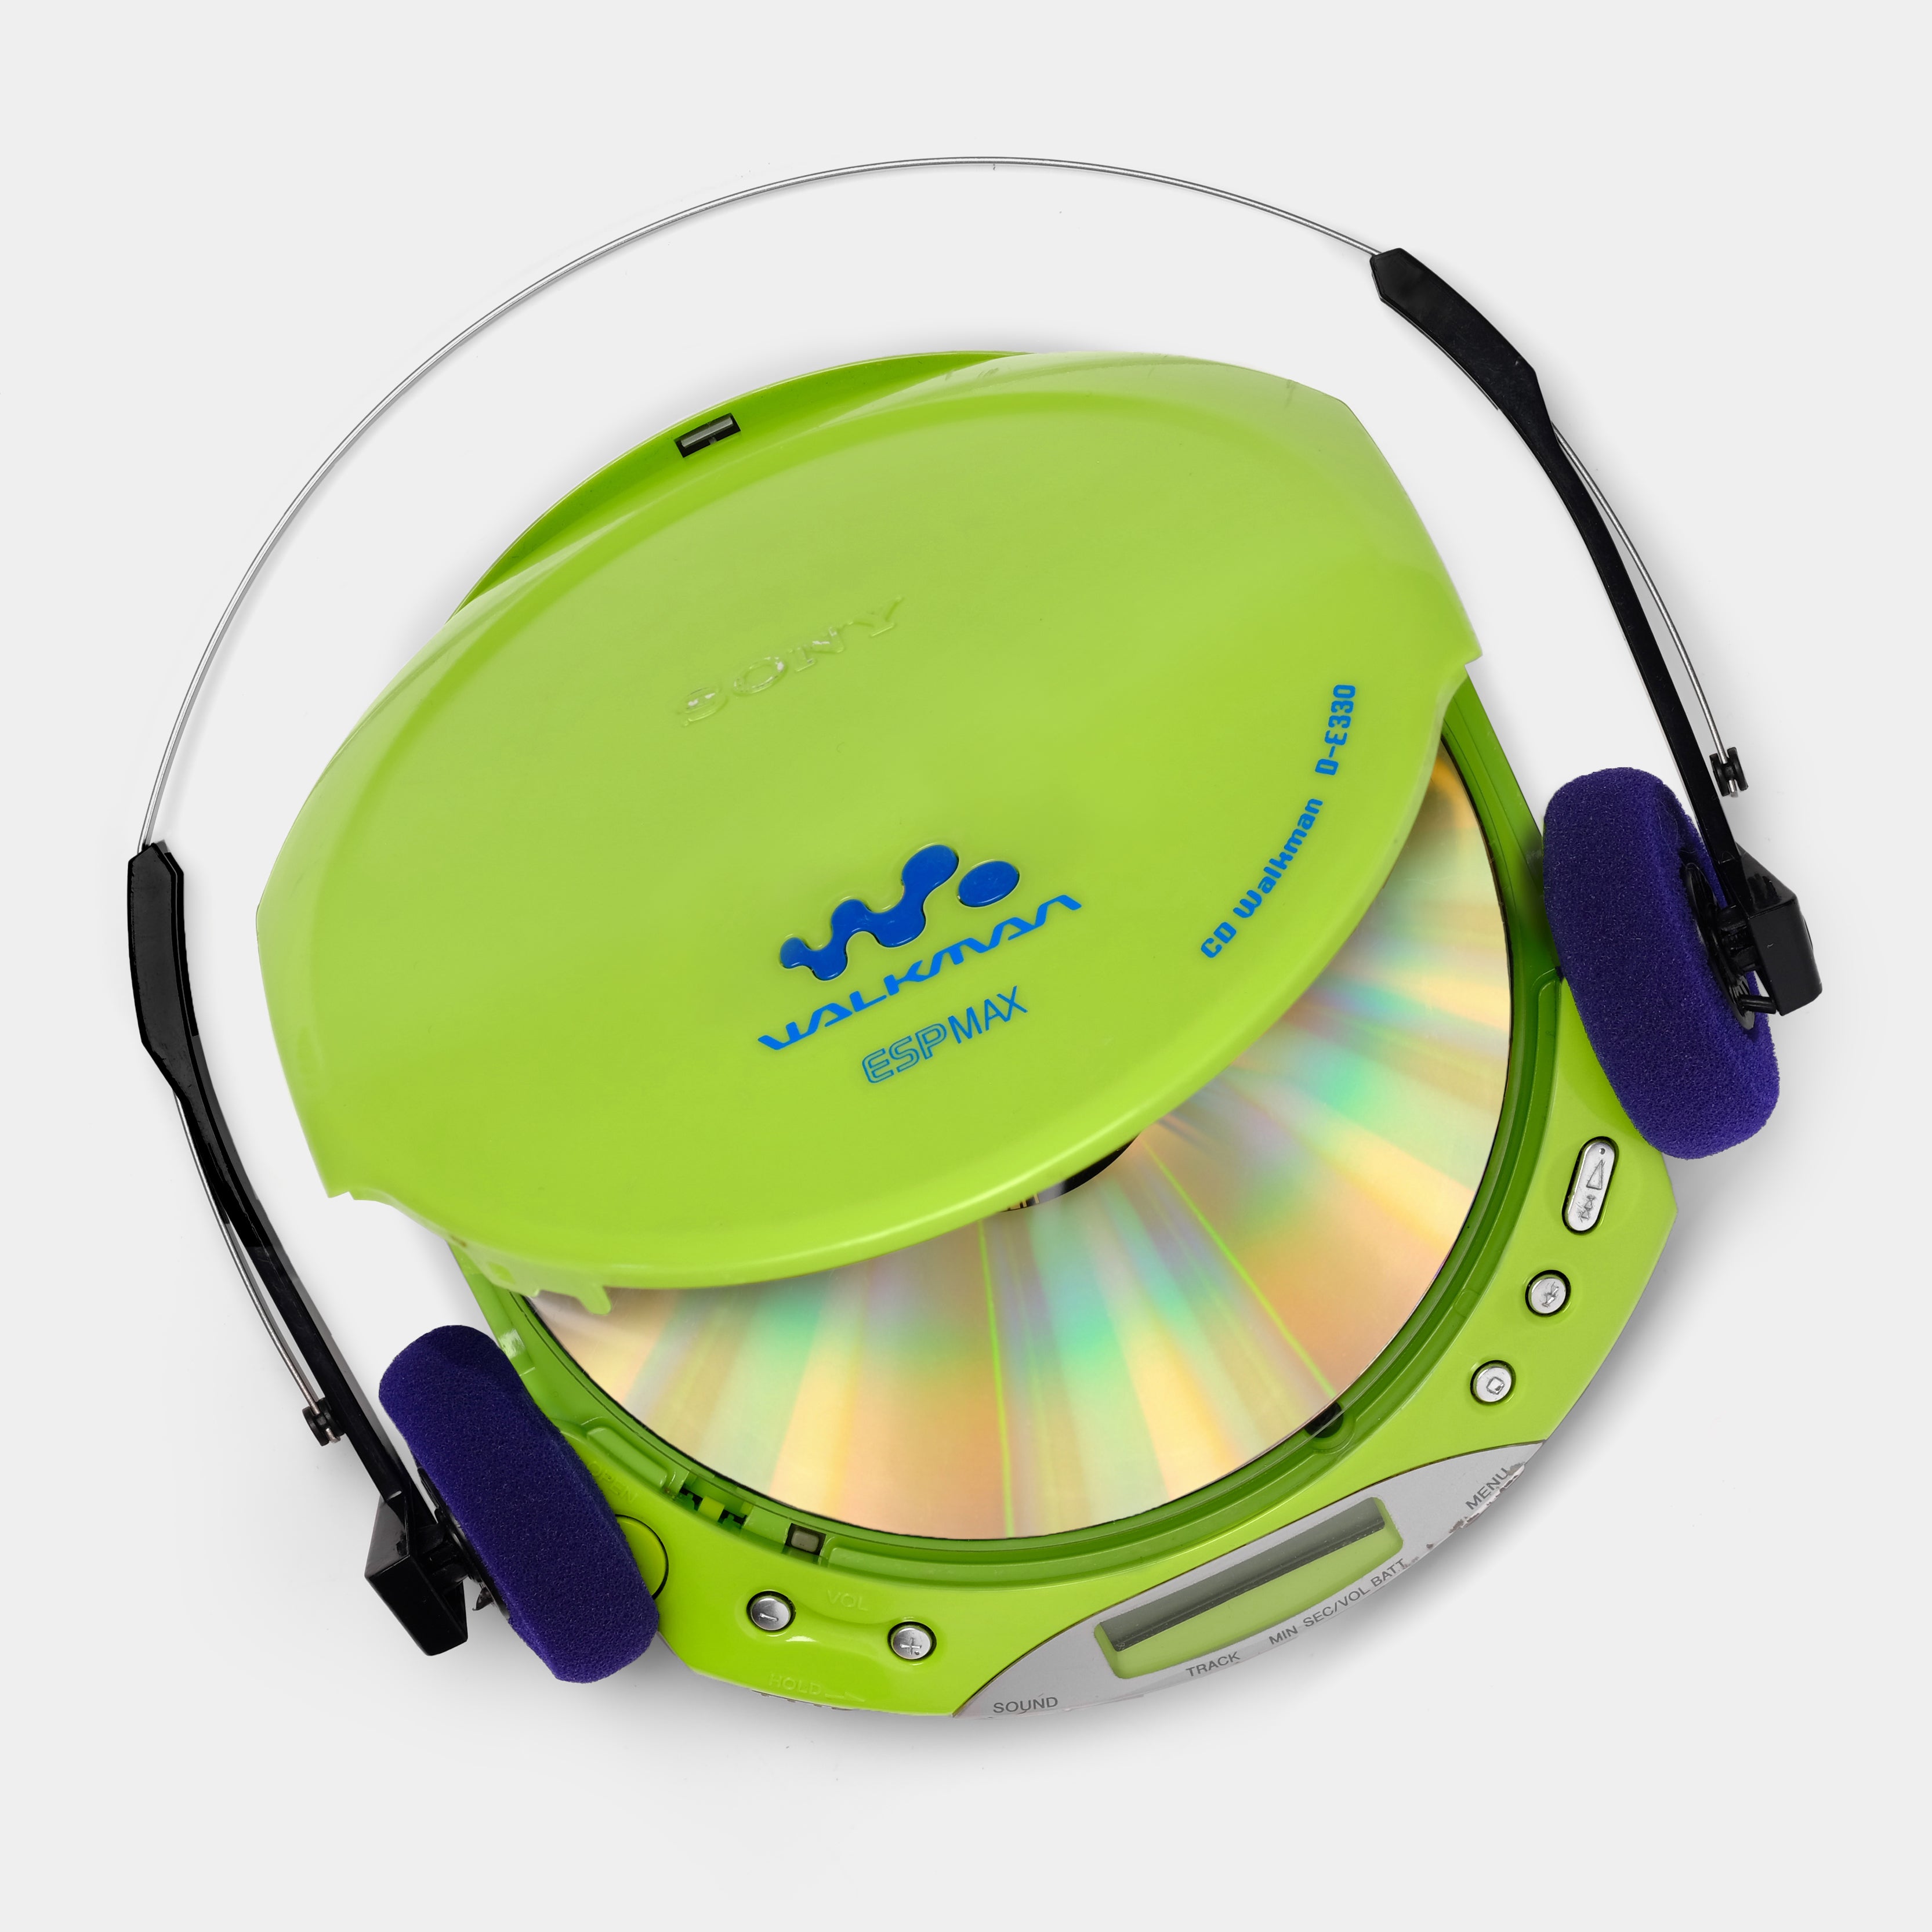 Sony D-E330 Green Portable CD Player (B-Grade)